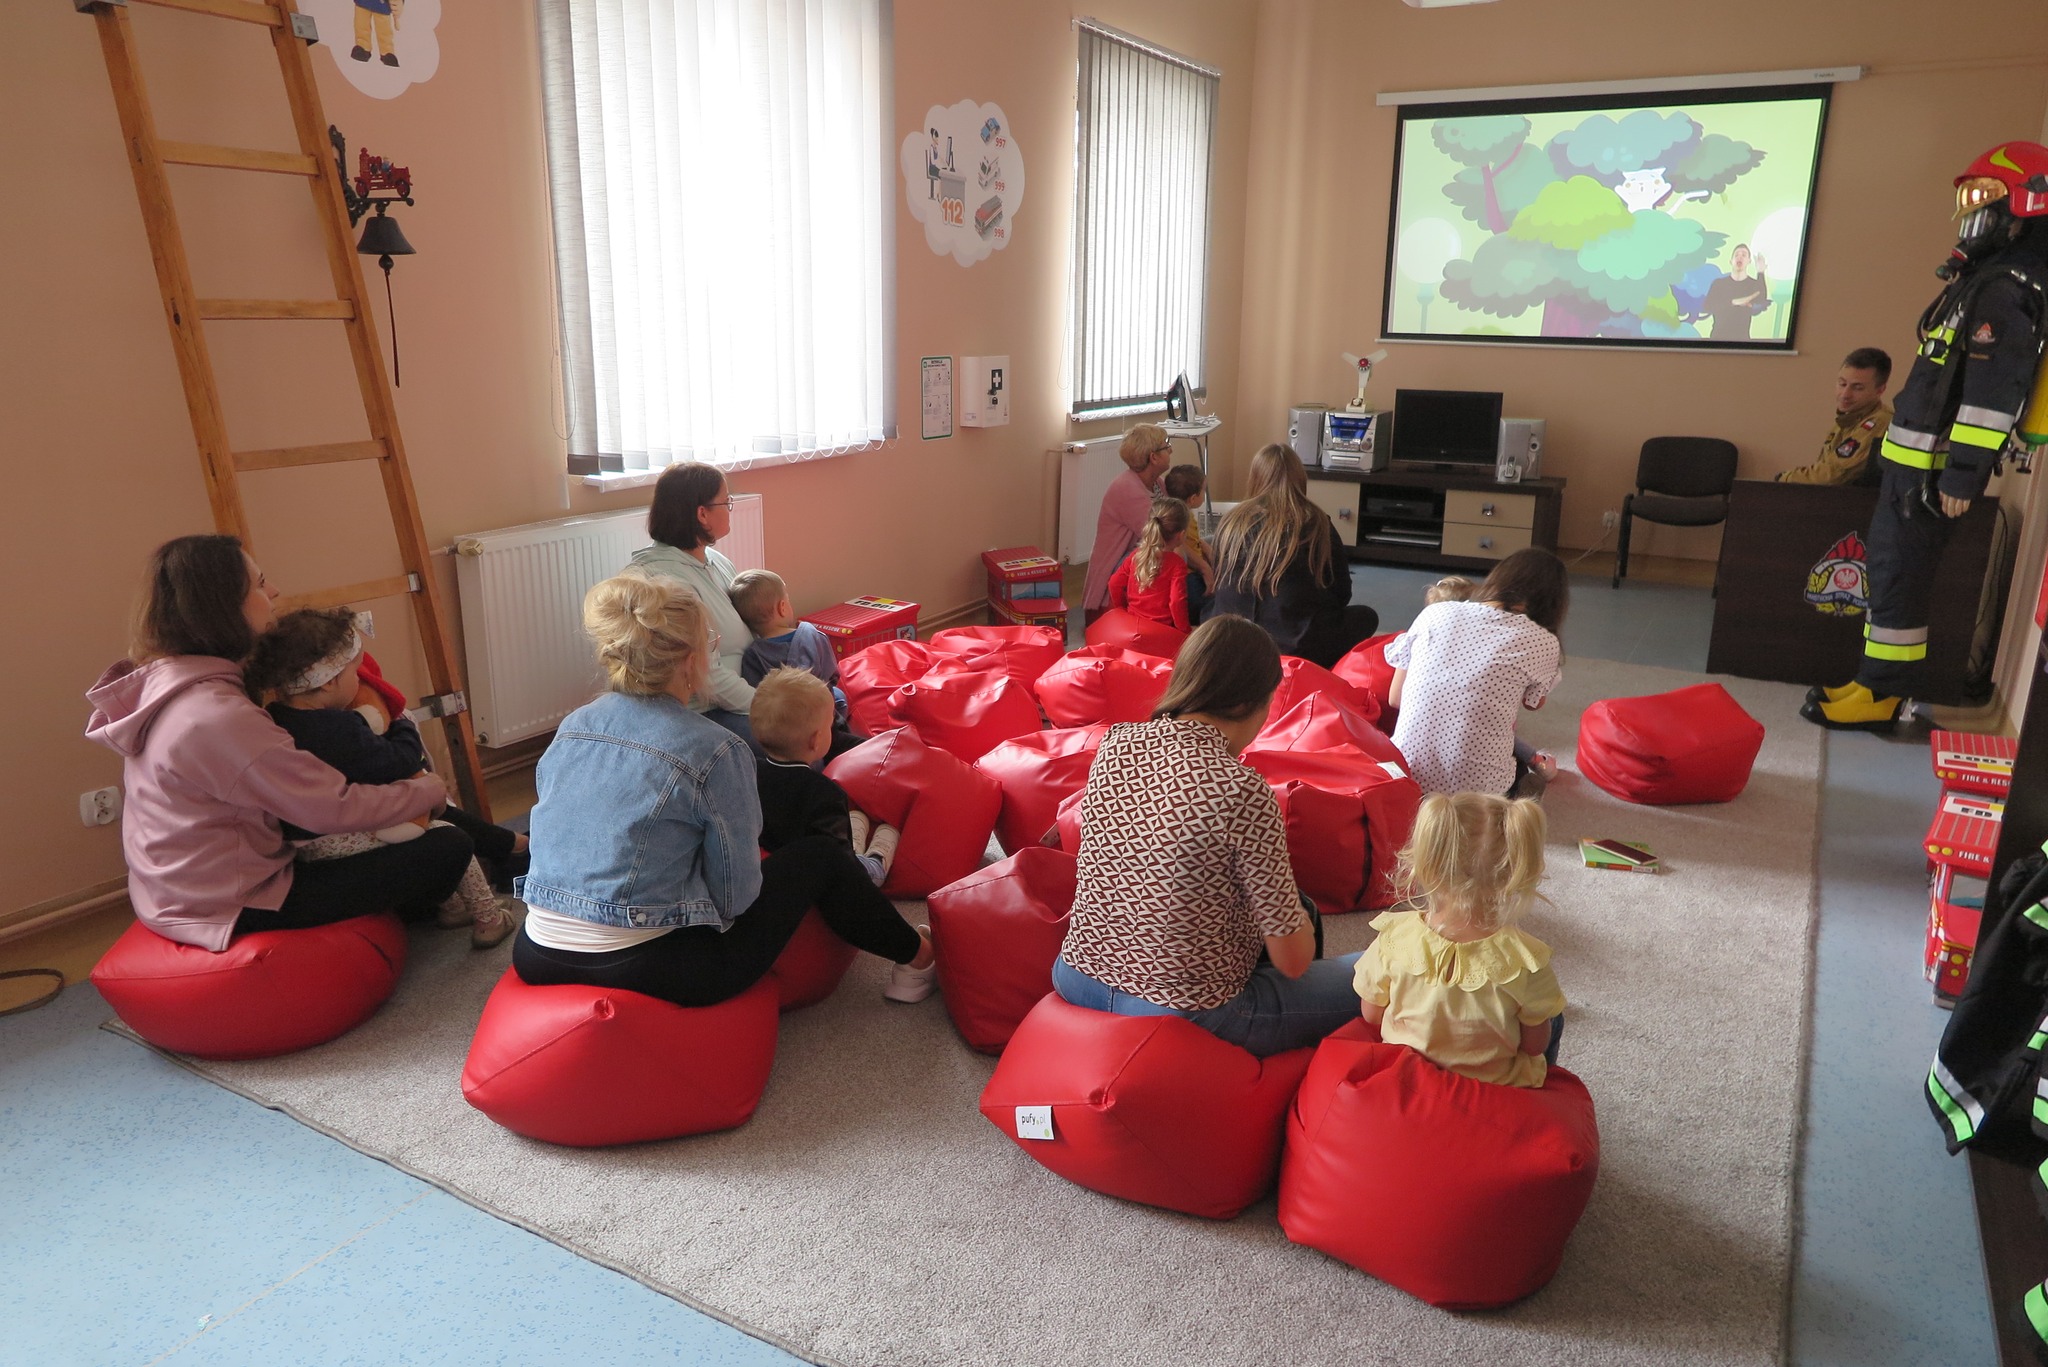 dzieci z klubu malucha z rodzicami z wizytą w Powiatowej Straży Pożarnej w Działdowie oglądają prezentację na ekranie